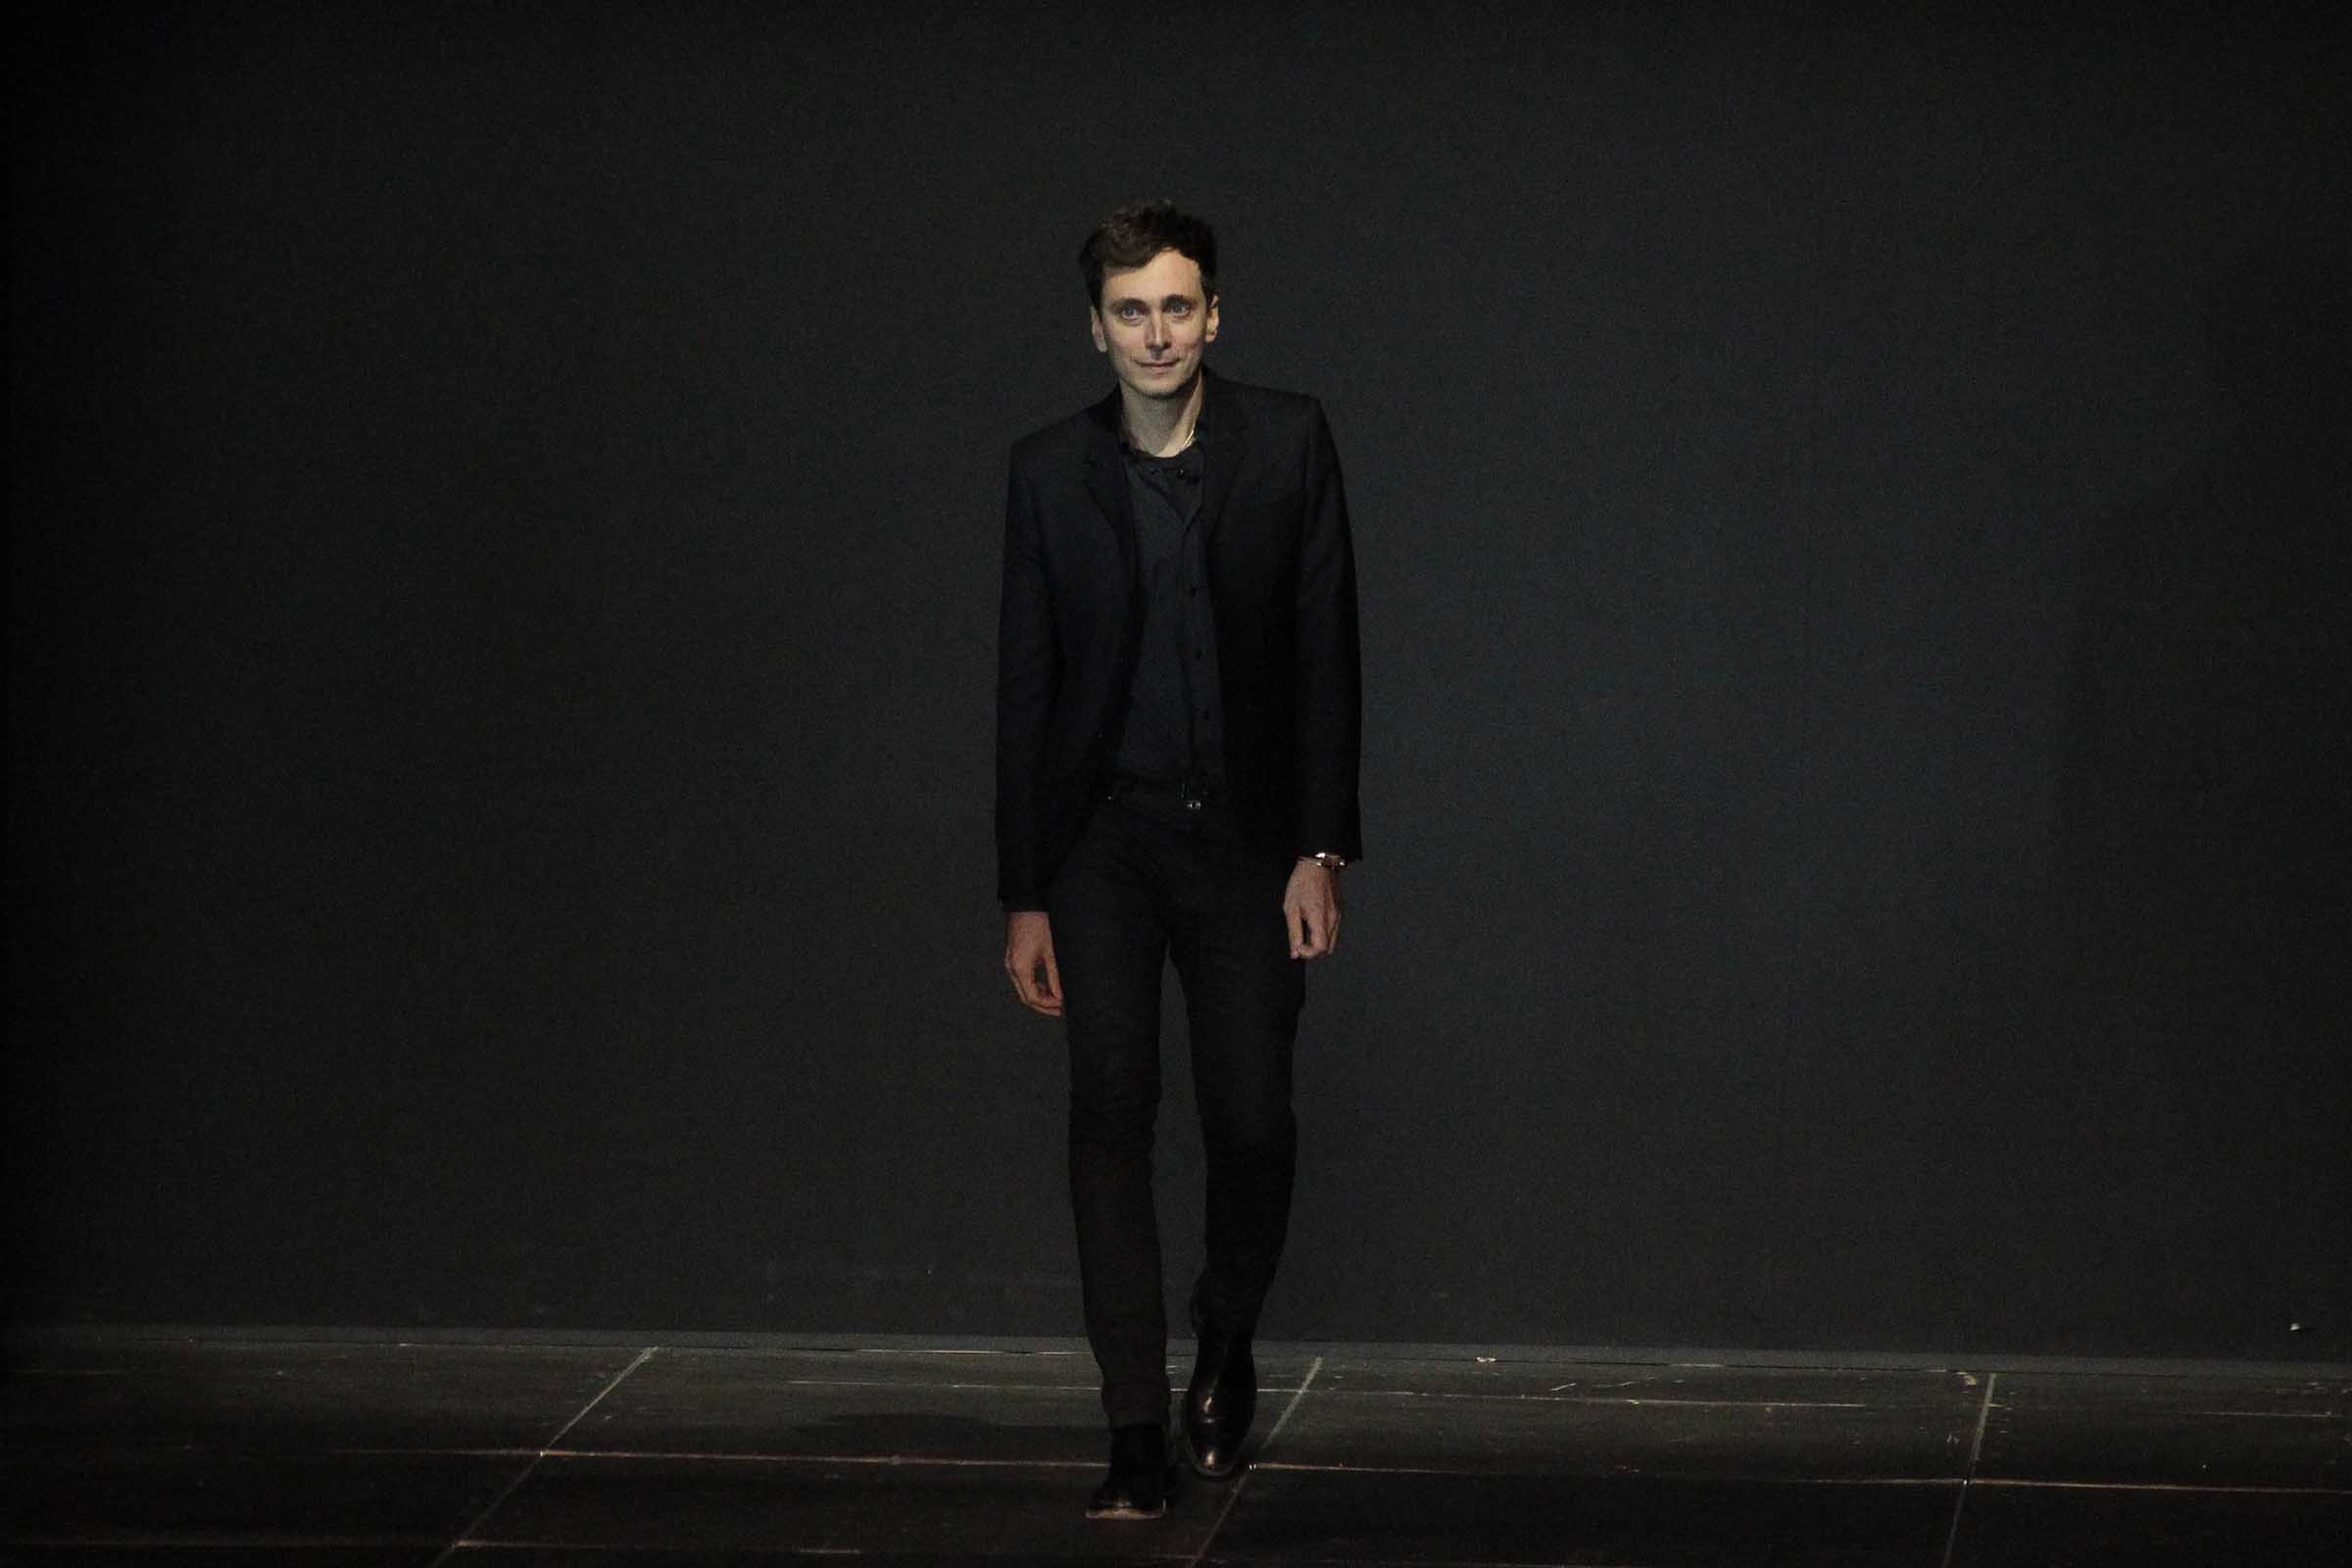 The all-world designer Hedi Slimane in his signature black suit